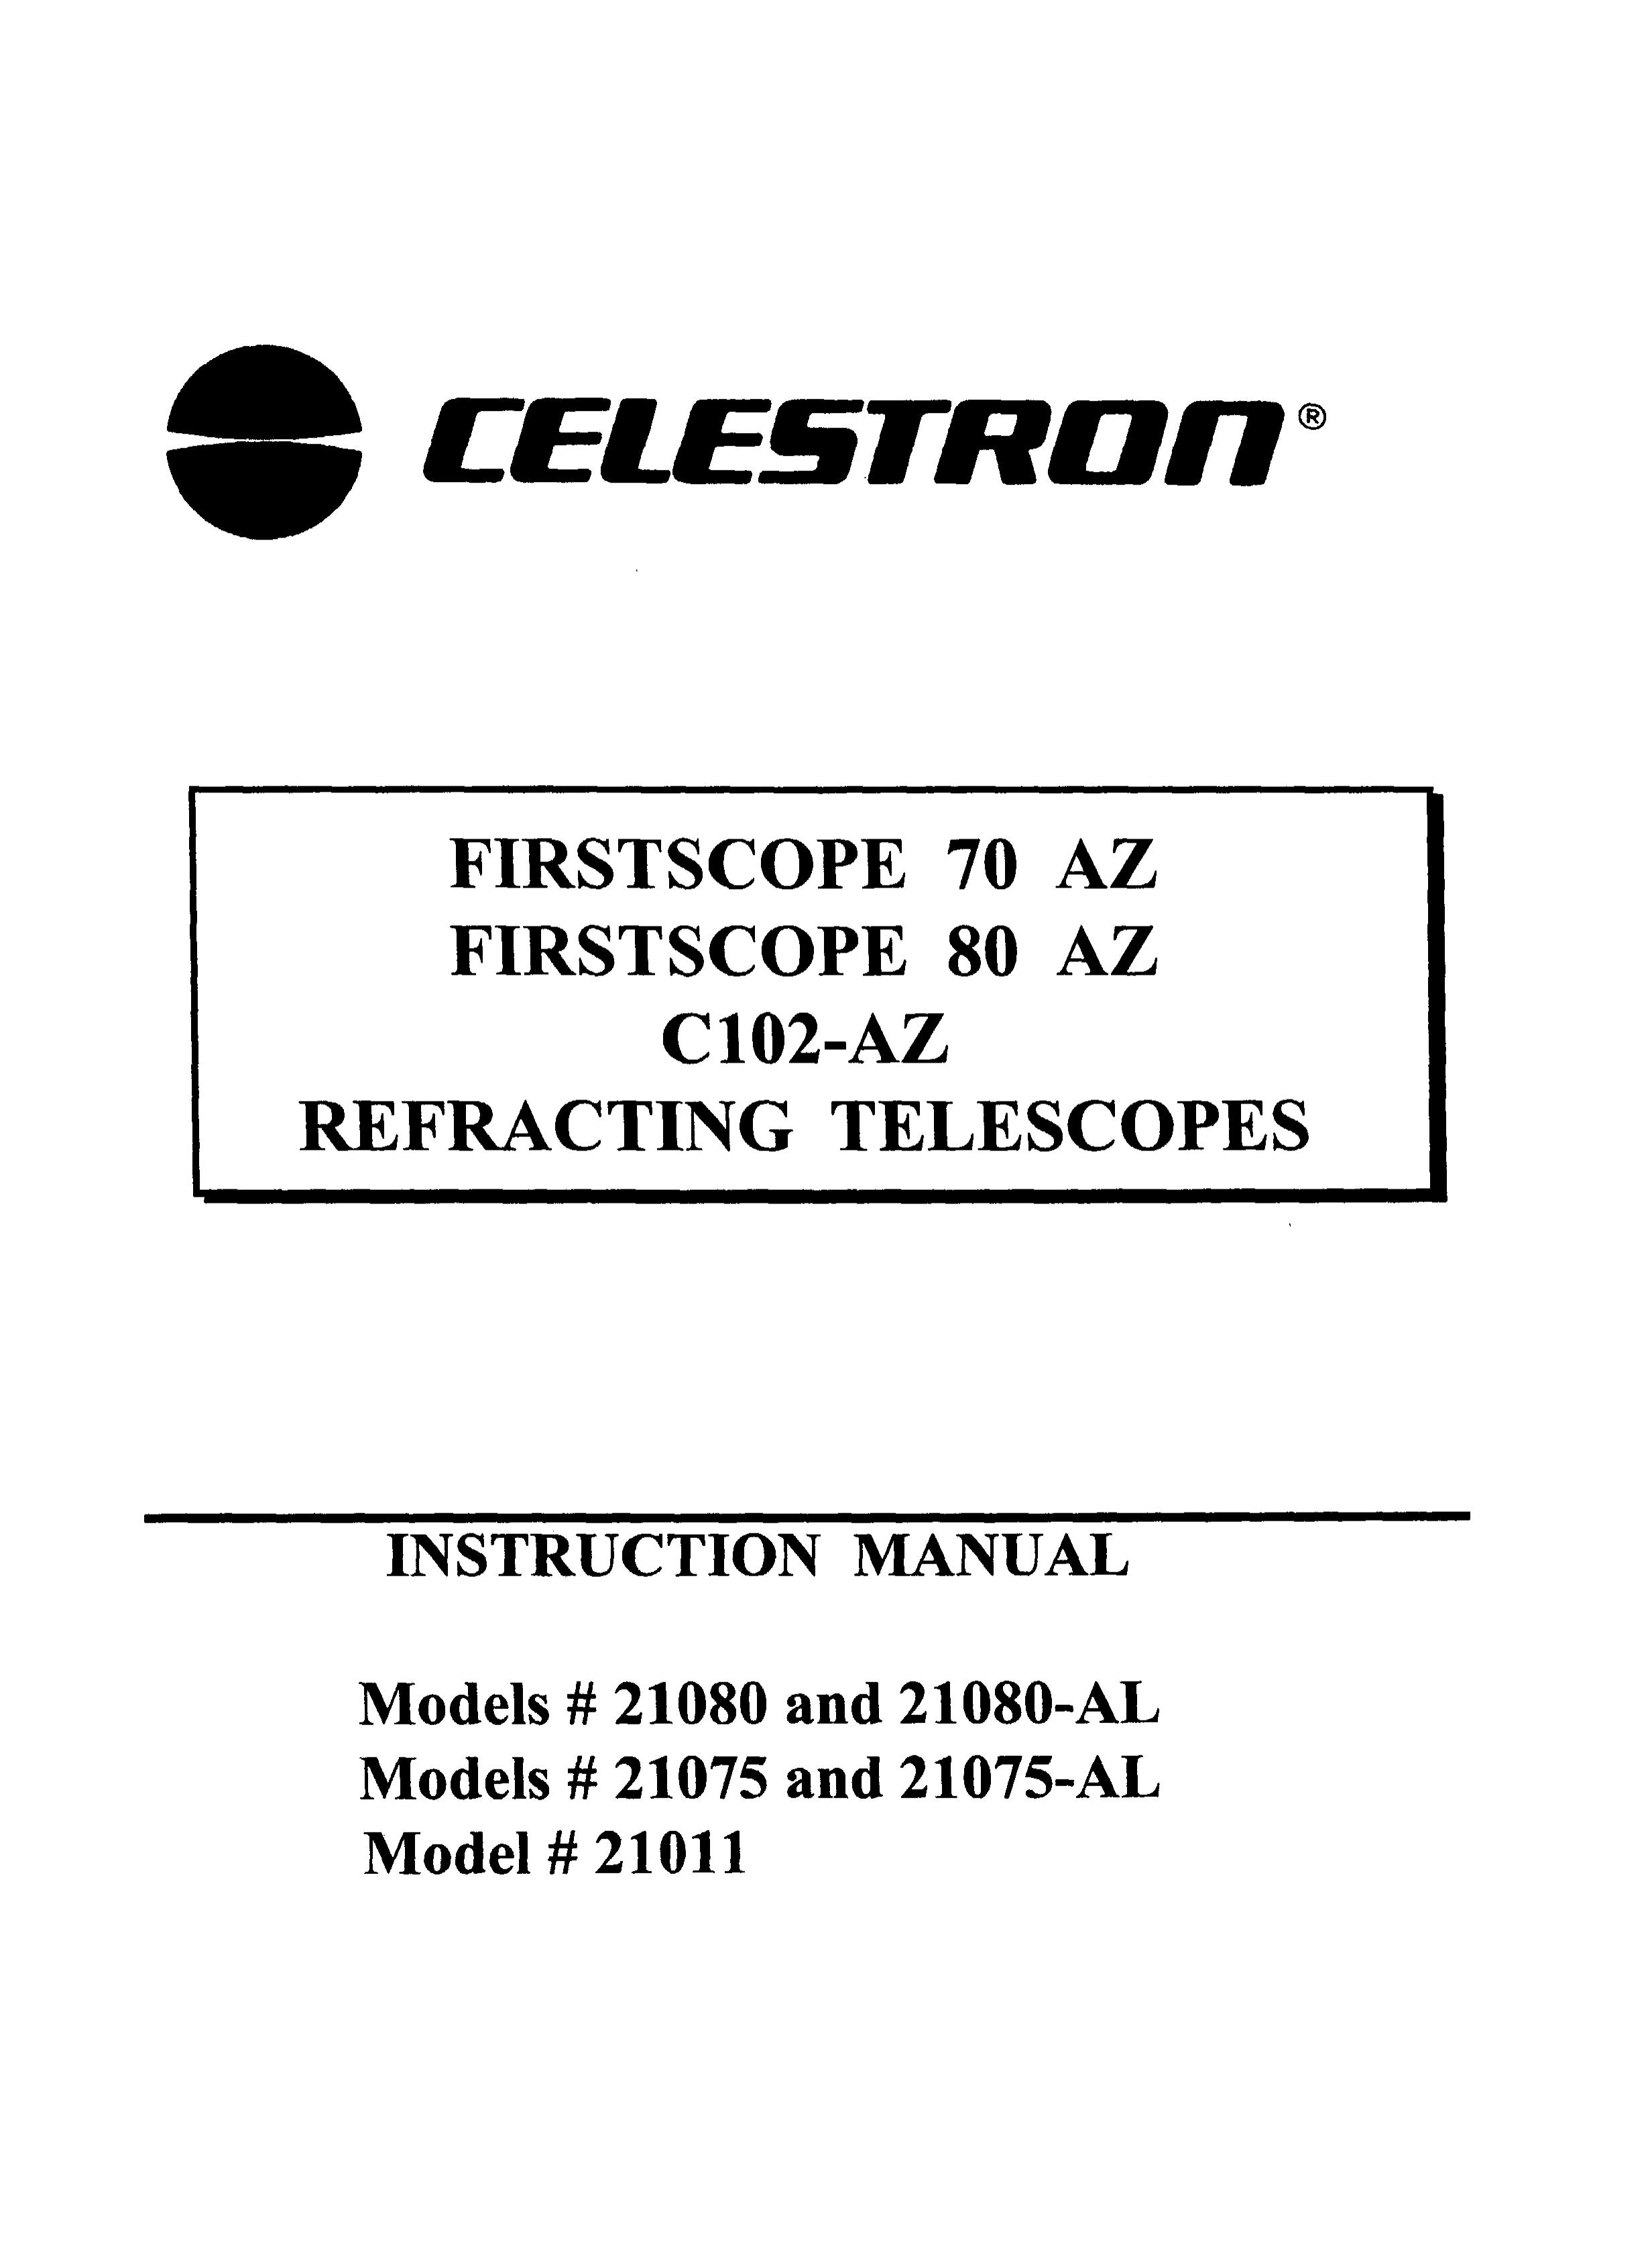 Celestron 21075 Telescope User Manual